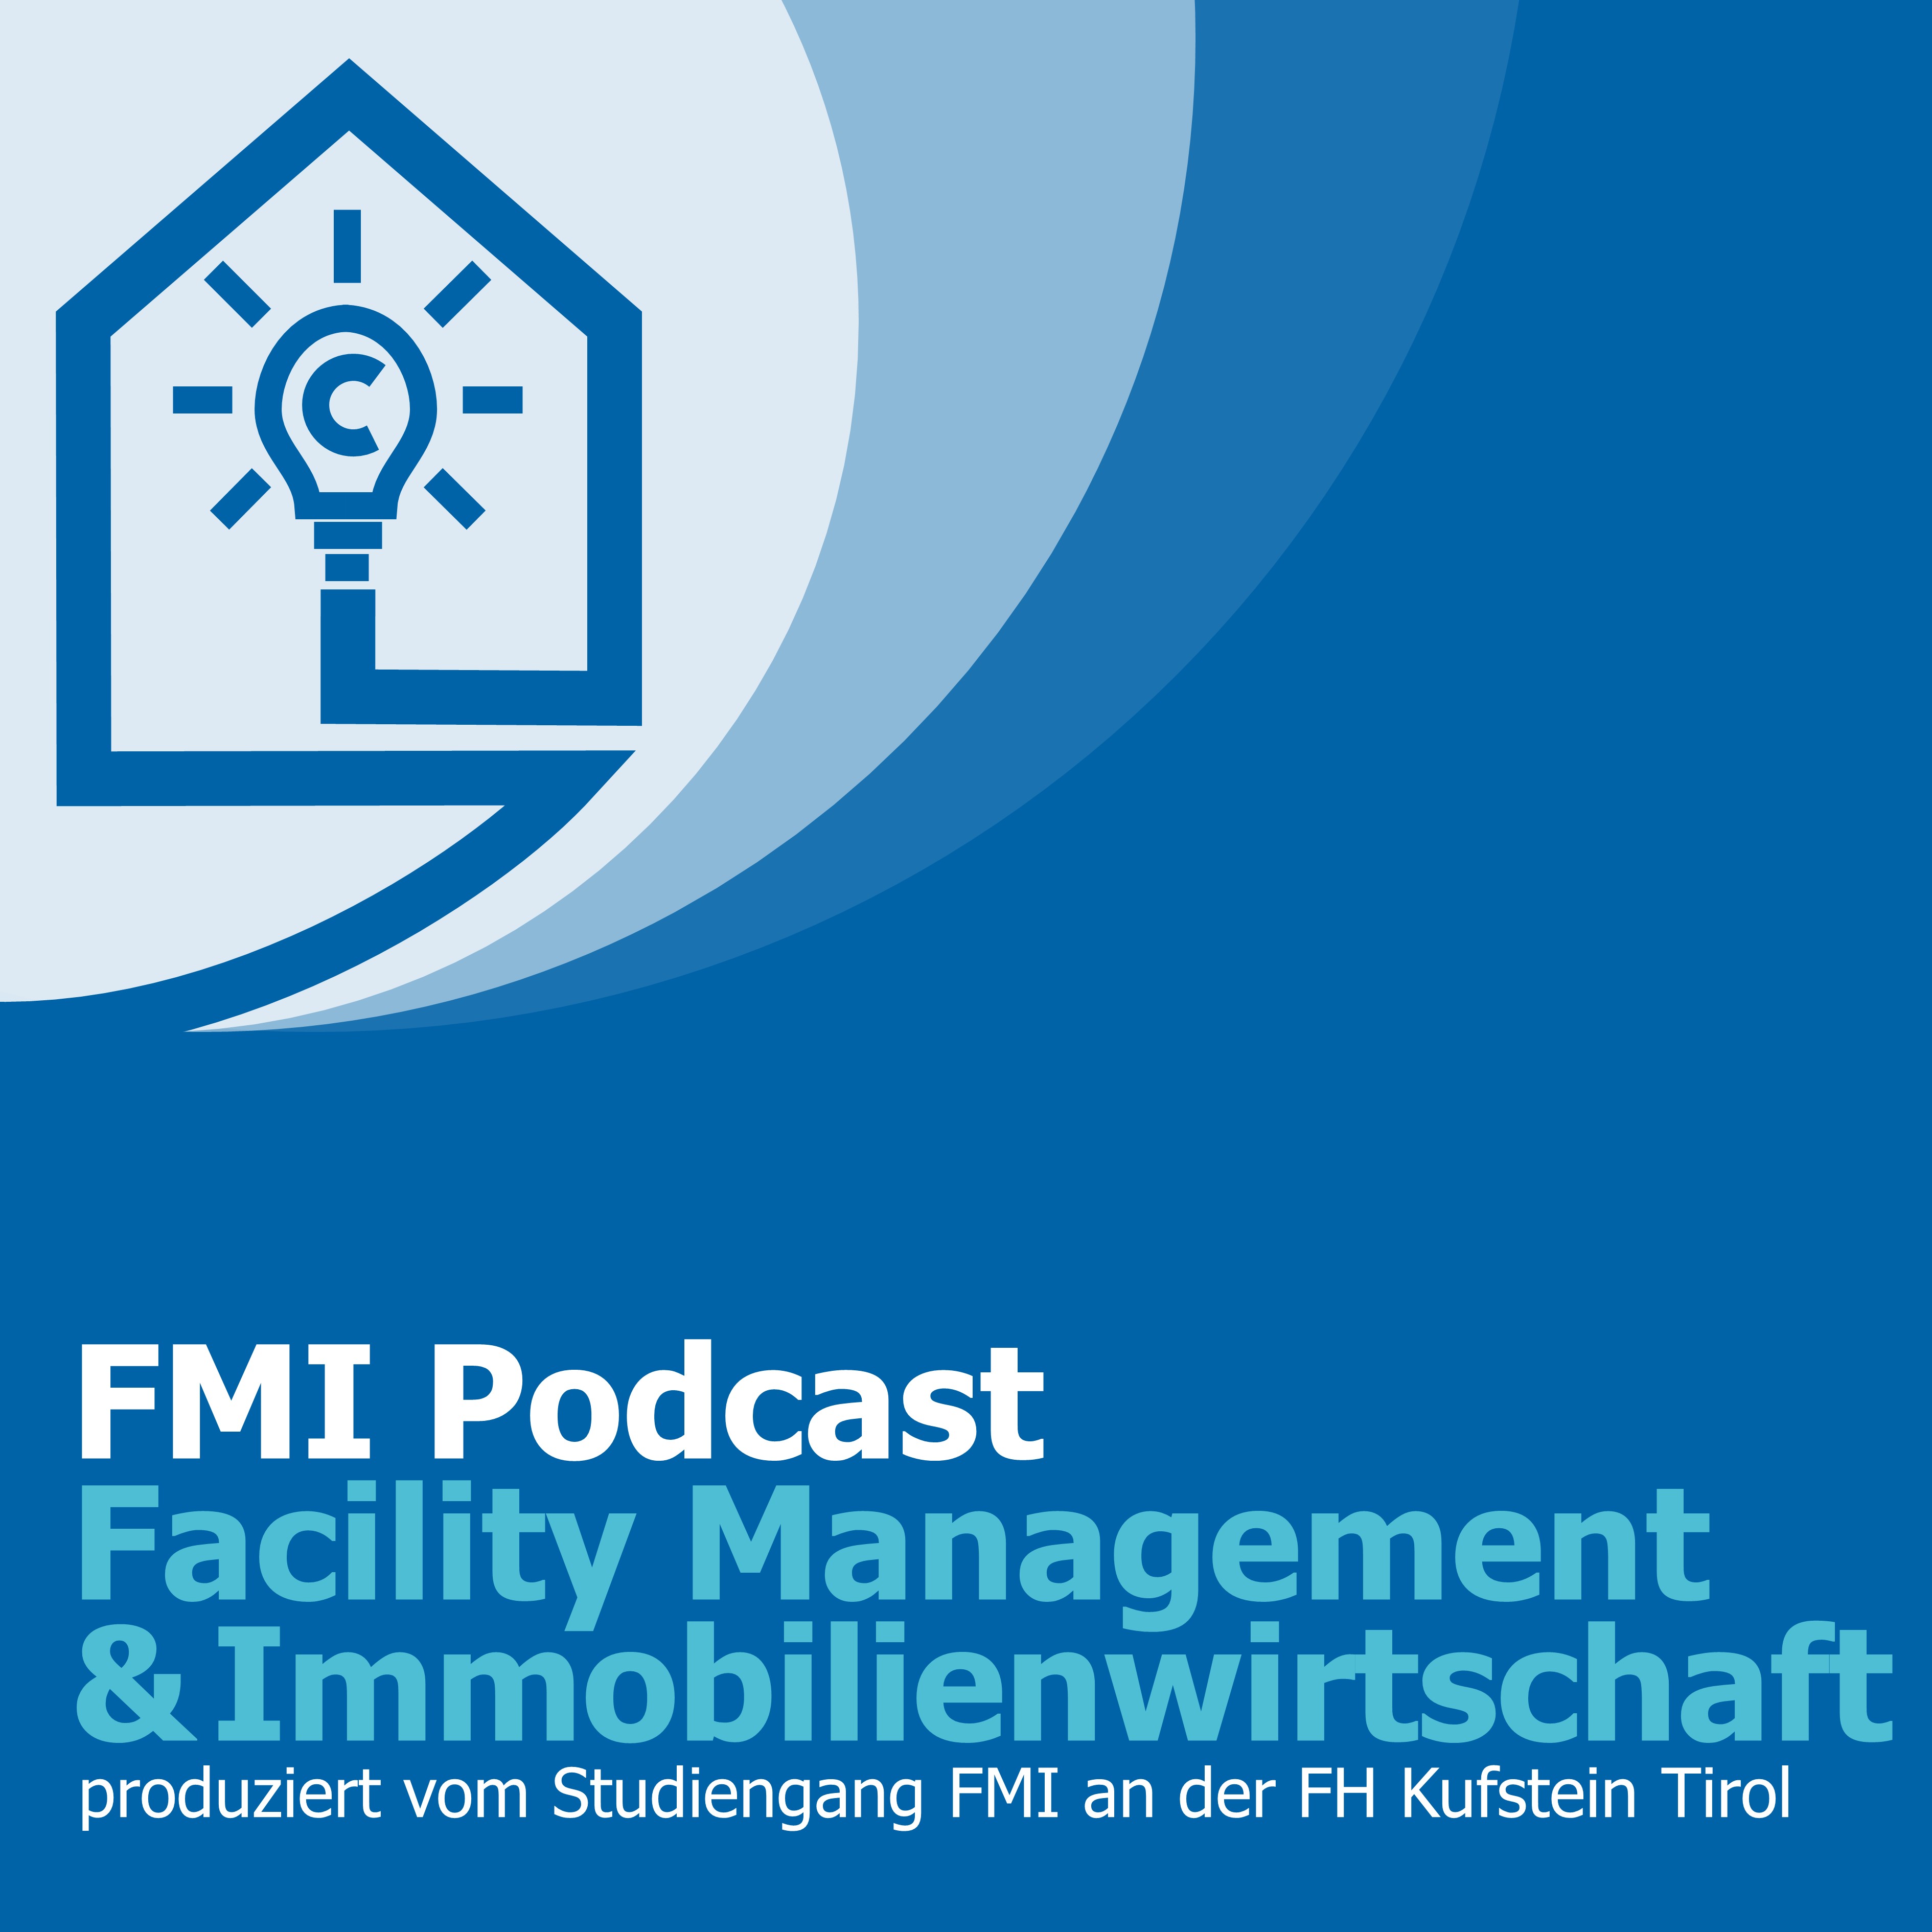 FMI - der Podcast über aktuelle Themen und Forschungsergebnisse rund um die Immobilie